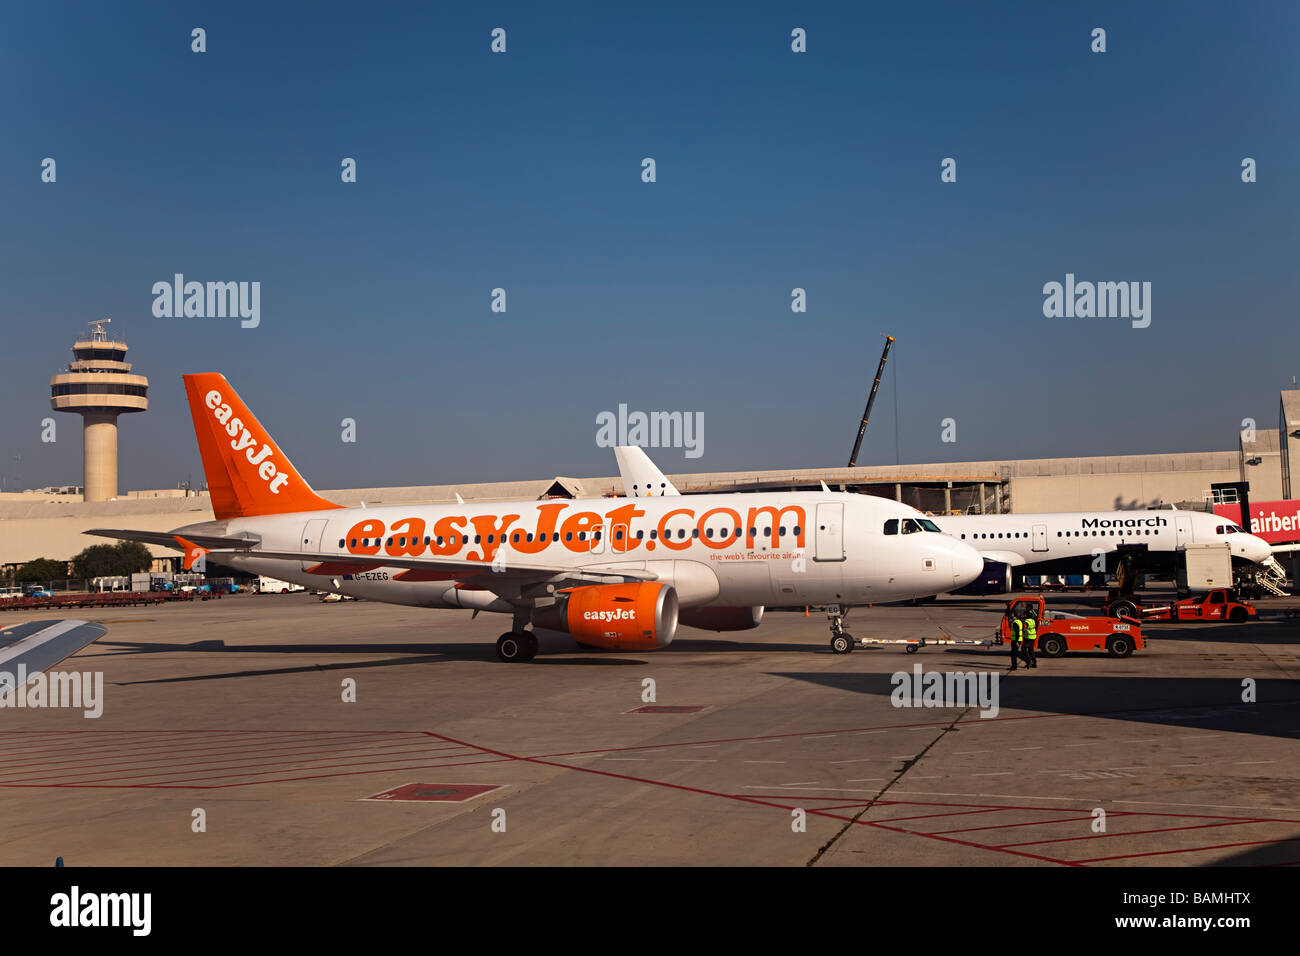 Aeromobili e torre di controllo dall'aeroporto di Palma Mallorca Spagna Spain Foto Stock